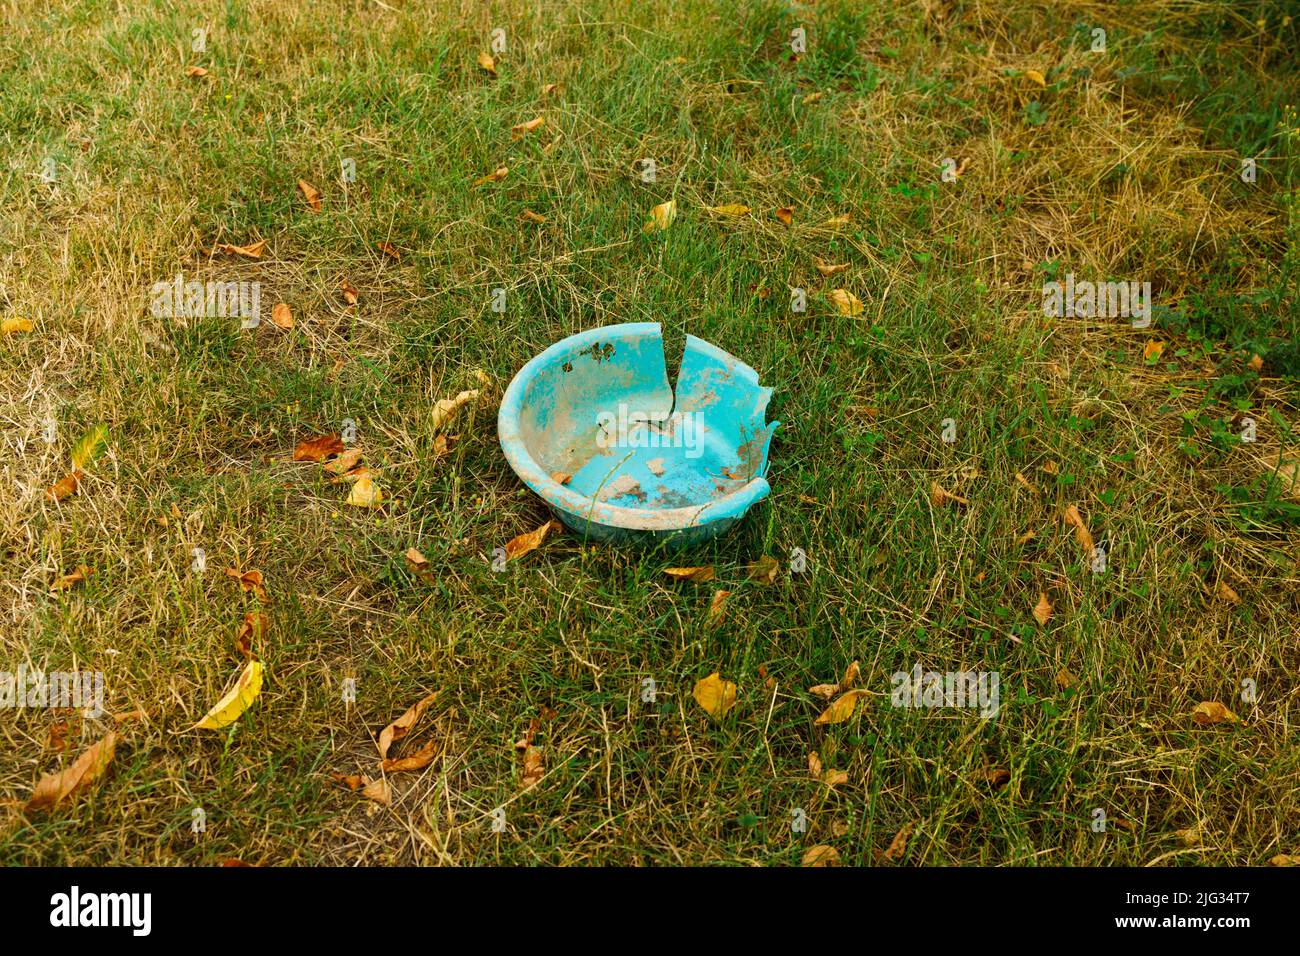 Un viejo washbowl azul que contamina el medio ambiente y se descompone lentamente bajo el clima Foto de stock